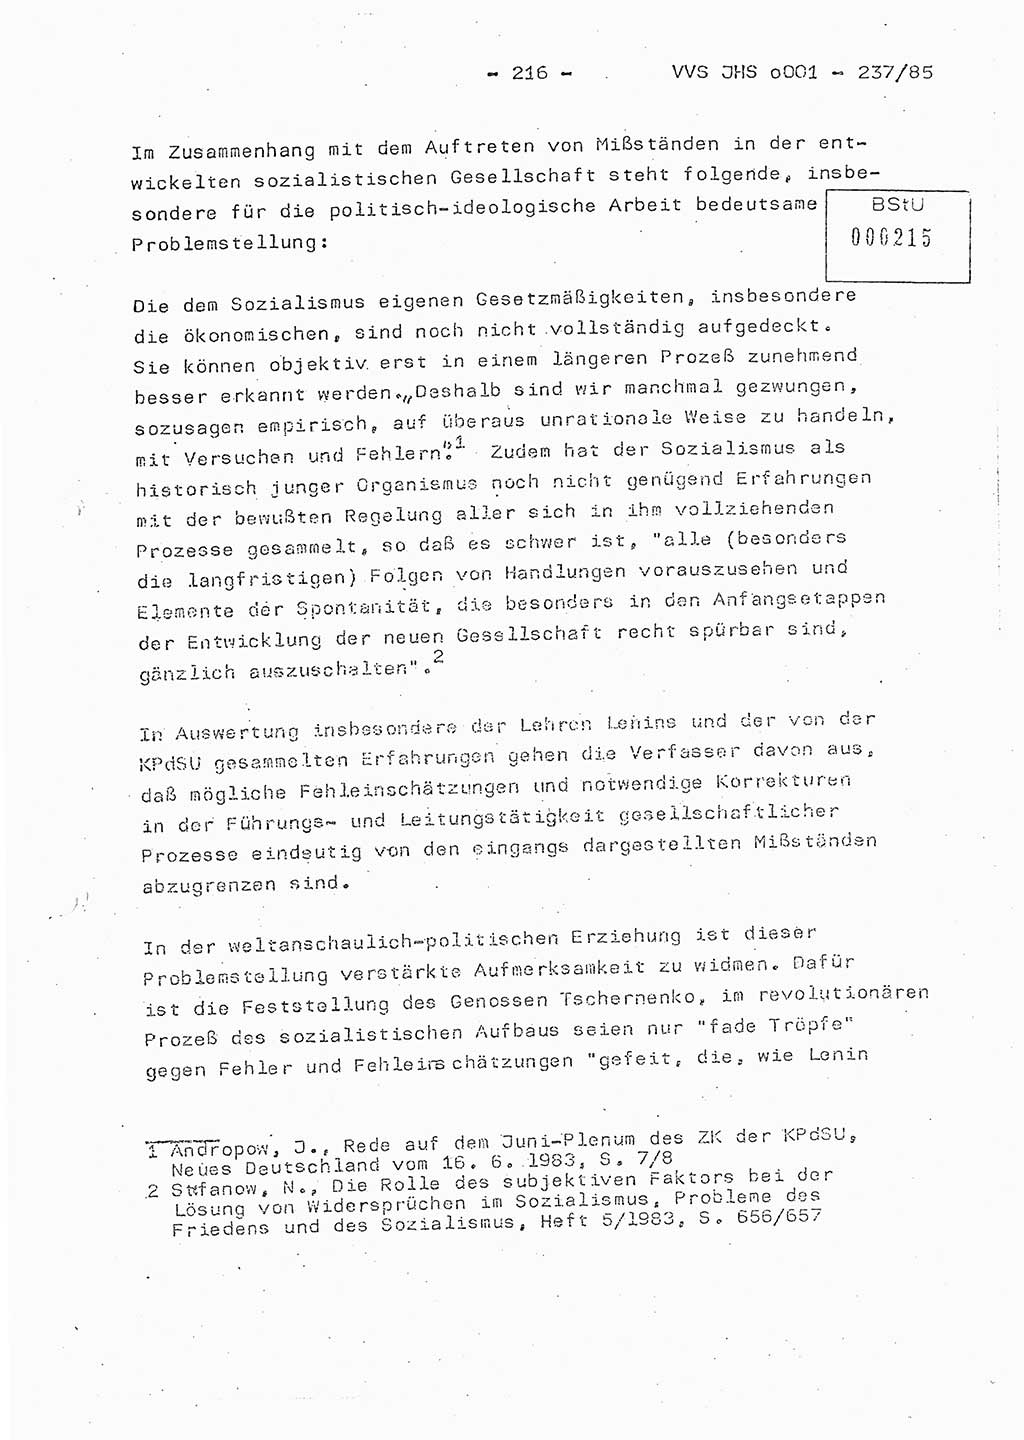 Dissertation Oberstleutnant Peter Jakulski (JHS), Oberstleutnat Christian Rudolph (HA Ⅸ), Major Horst Böttger (ZMD), Major Wolfgang Grüneberg (JHS), Major Albert Meutsch (JHS), Ministerium für Staatssicherheit (MfS) [Deutsche Demokratische Republik (DDR)], Juristische Hochschule (JHS), Vertrauliche Verschlußsache (VVS) o001-237/85, Potsdam 1985, Seite 216 (Diss. MfS DDR JHS VVS o001-237/85 1985, S. 216)